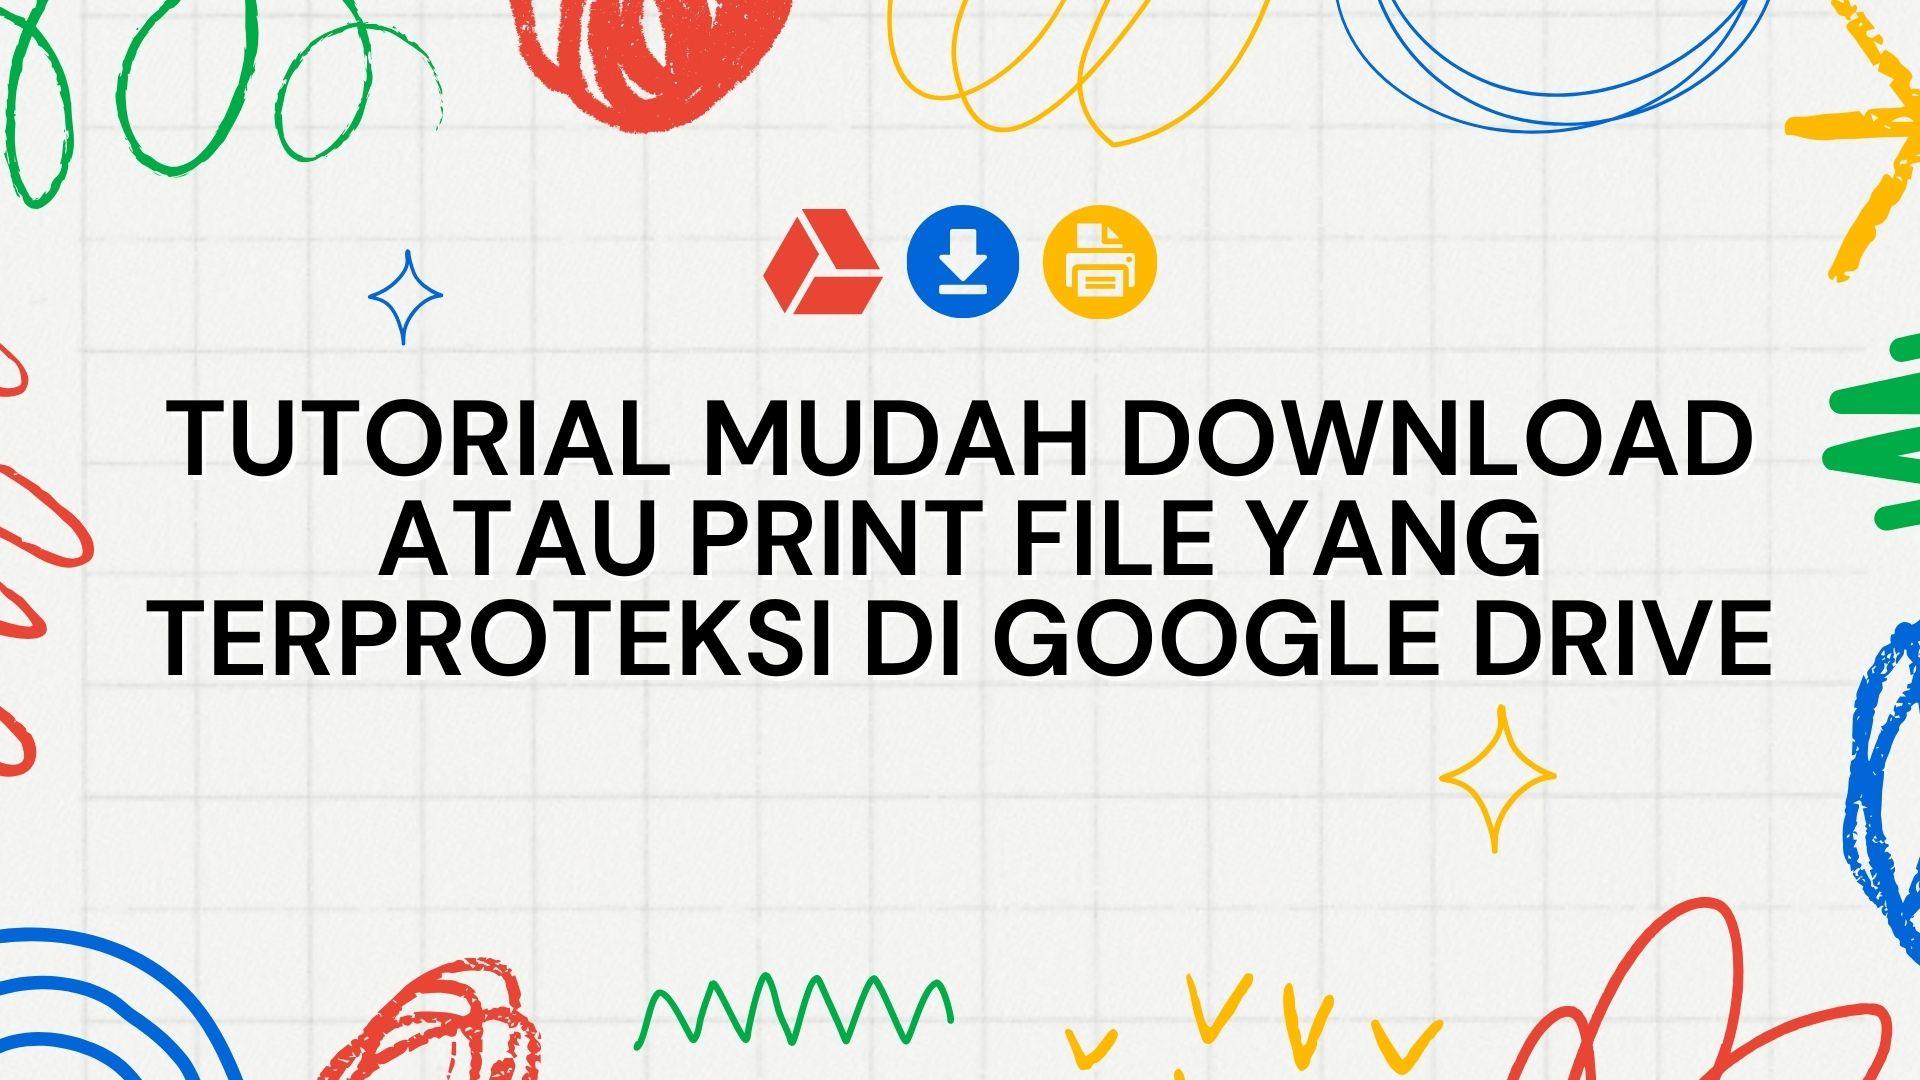 Thumbnail for article Tutorial Mudah Download atau Print File yang Terproteksi di Google Drive